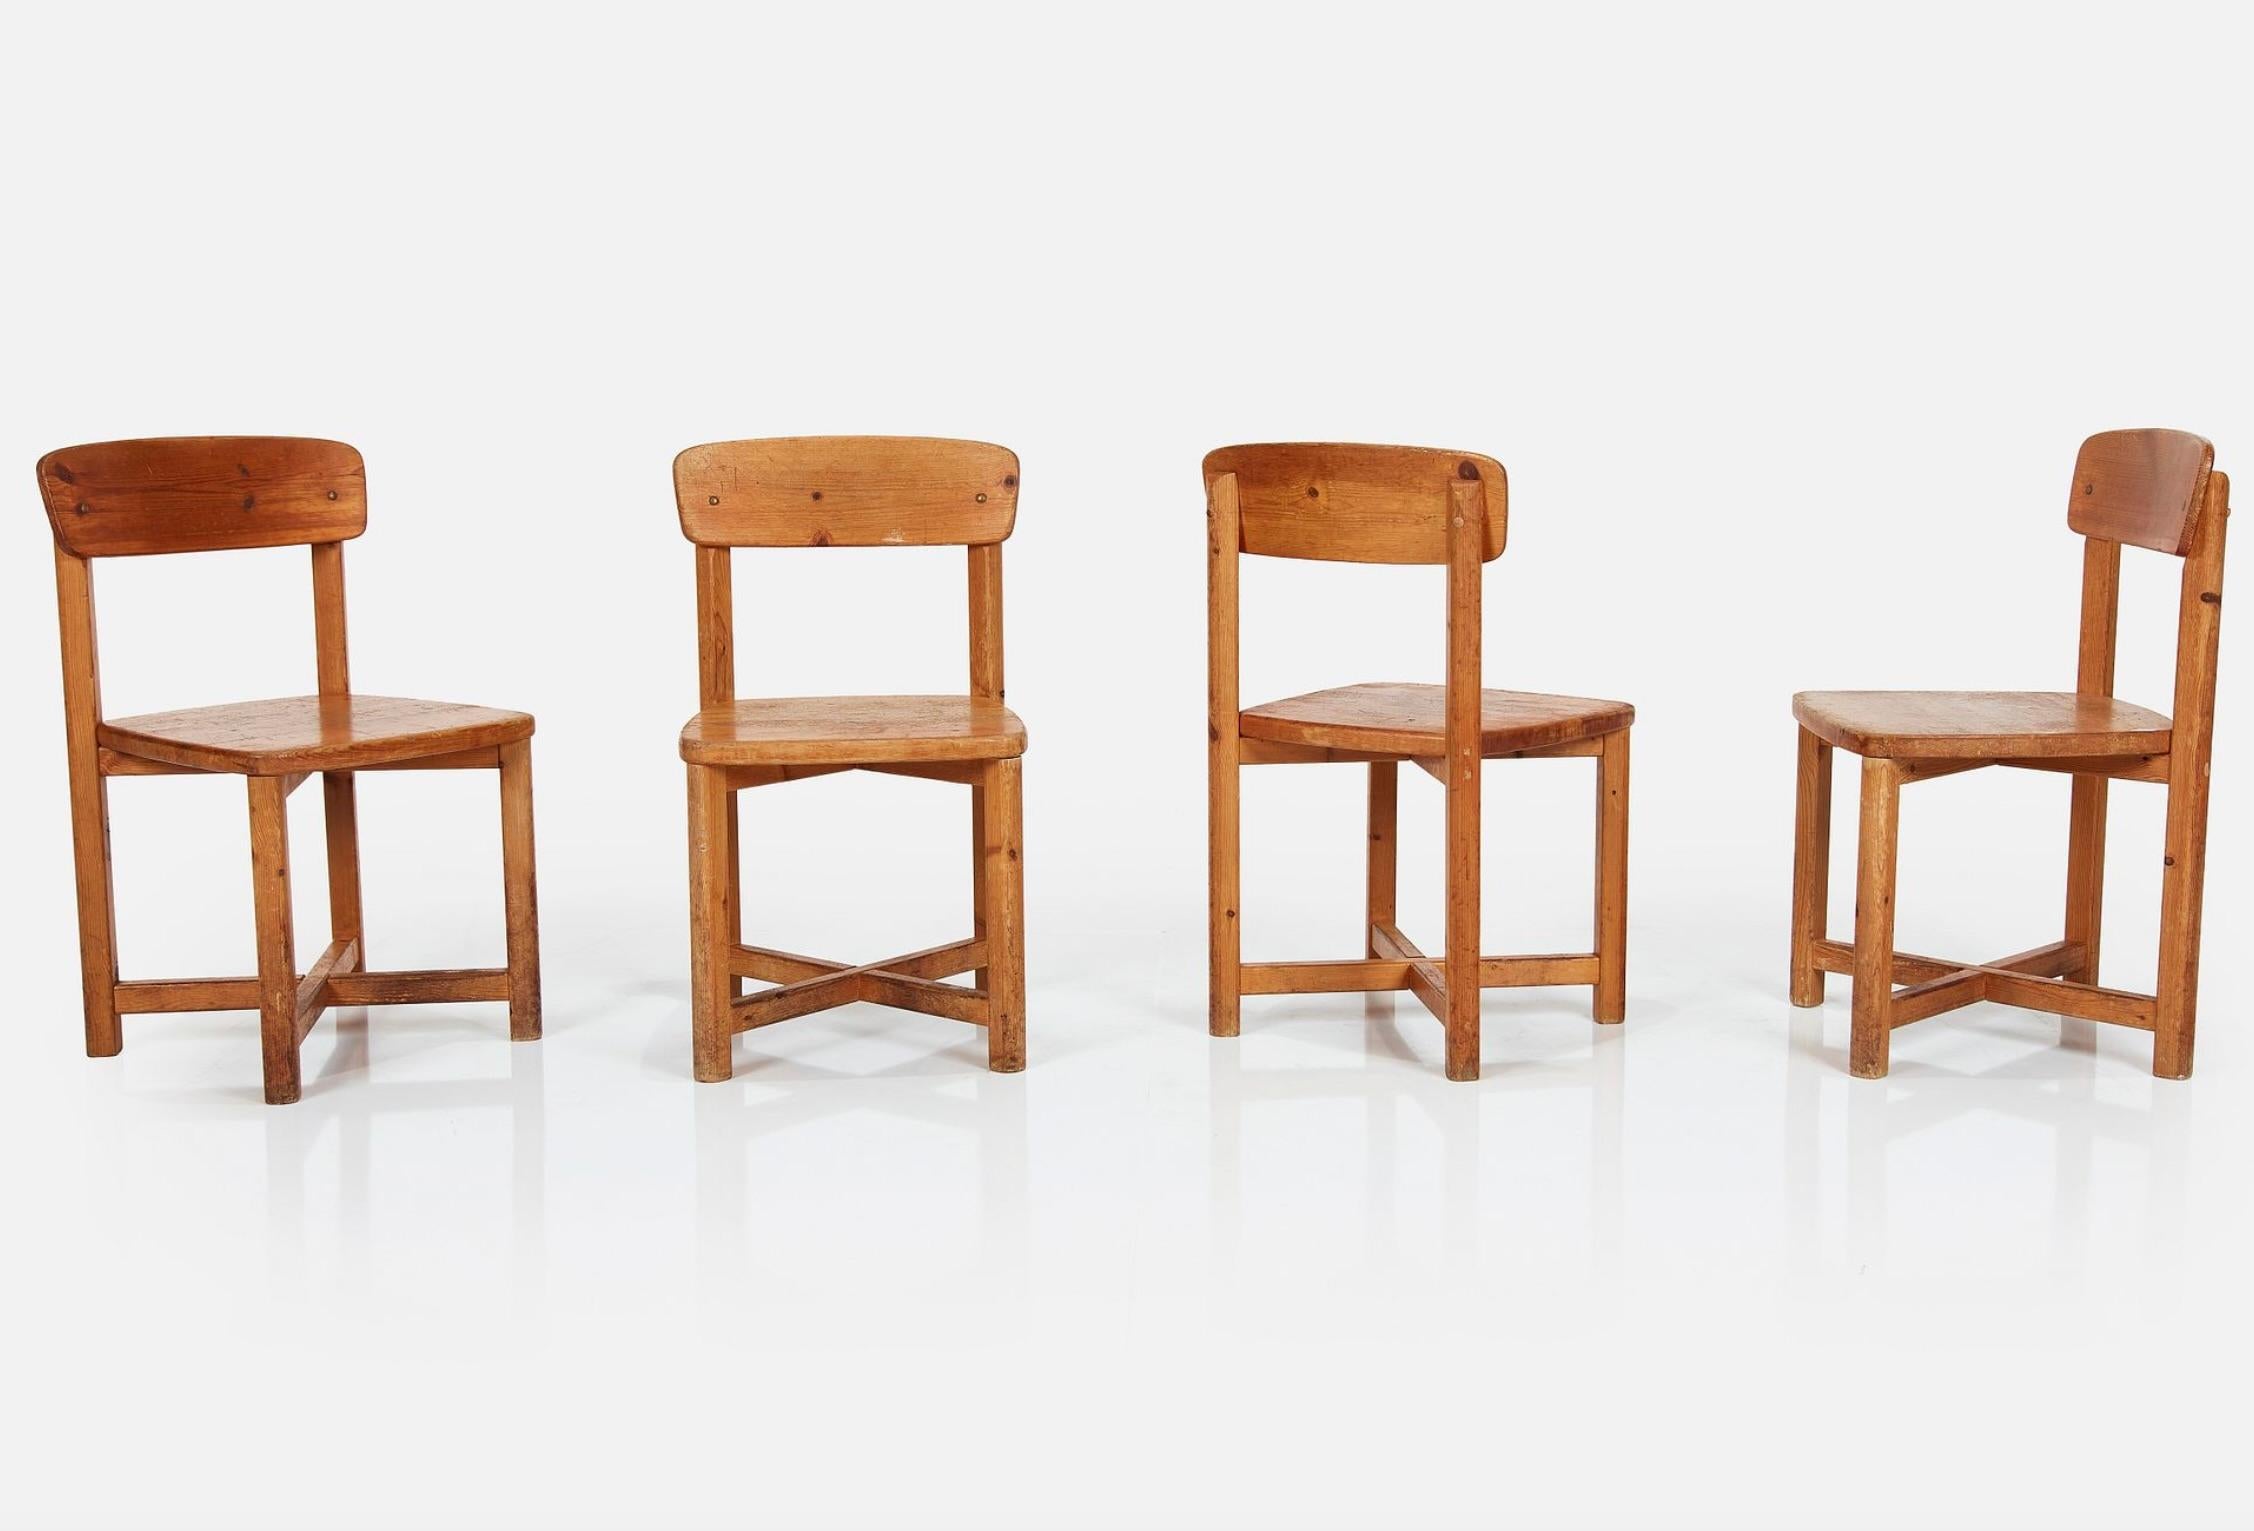 Diese Esszimmerstühle aus schwedischem Kiefernholz sind der Inbegriff von rustikalem Charme und zeitloser Schlichtheit. Die aus robustem Kiefernholz gefertigten Stühle vereinen Langlebigkeit mit einer einladenden Wärme, die die natürlichen